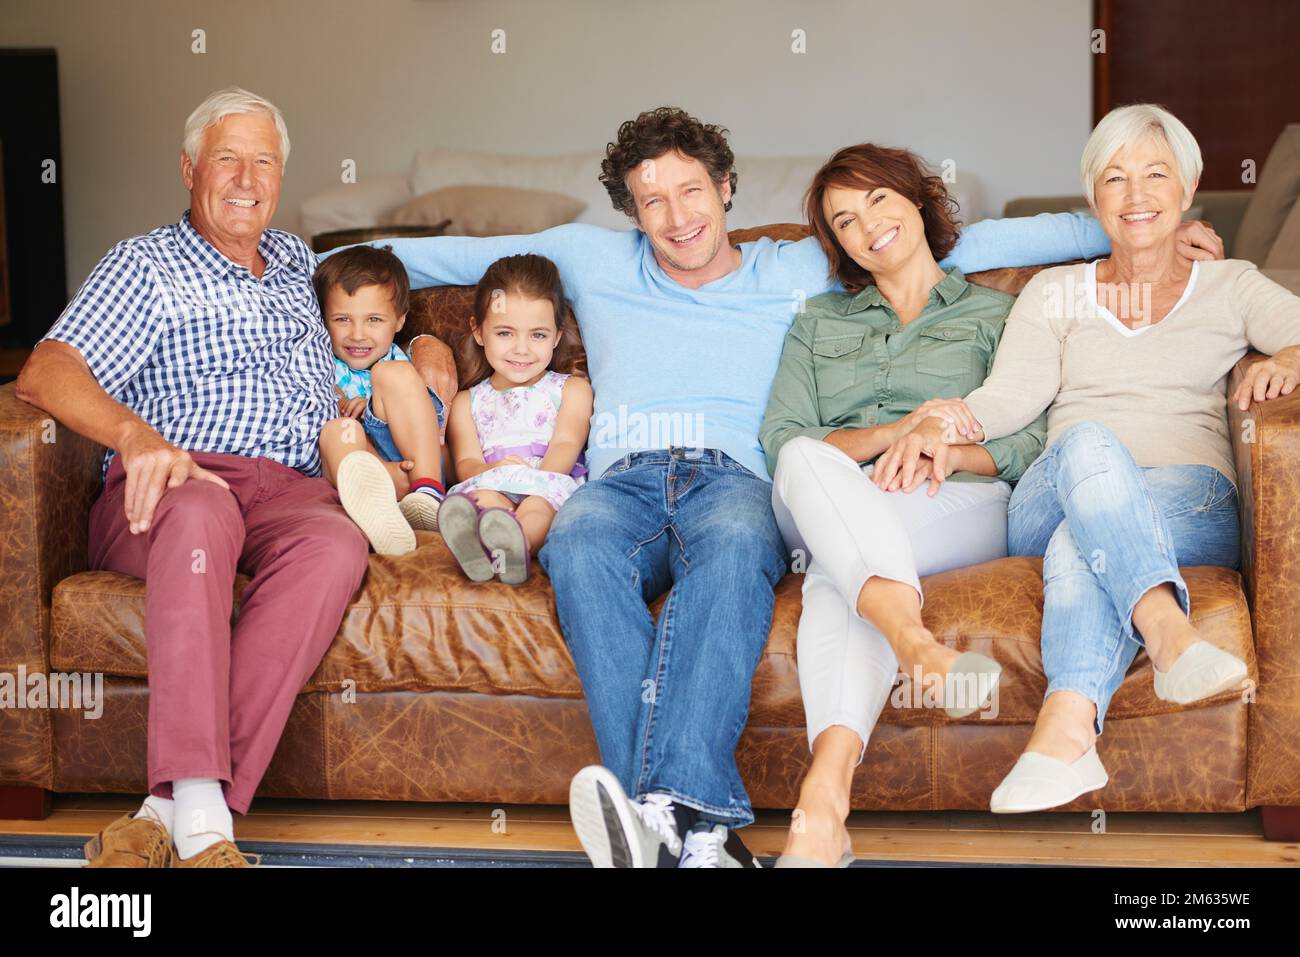 Trascorrere un po' di tempo in famiglia insieme. una famiglia felice multi-generazionale seduto insieme su un divano. Foto Stock